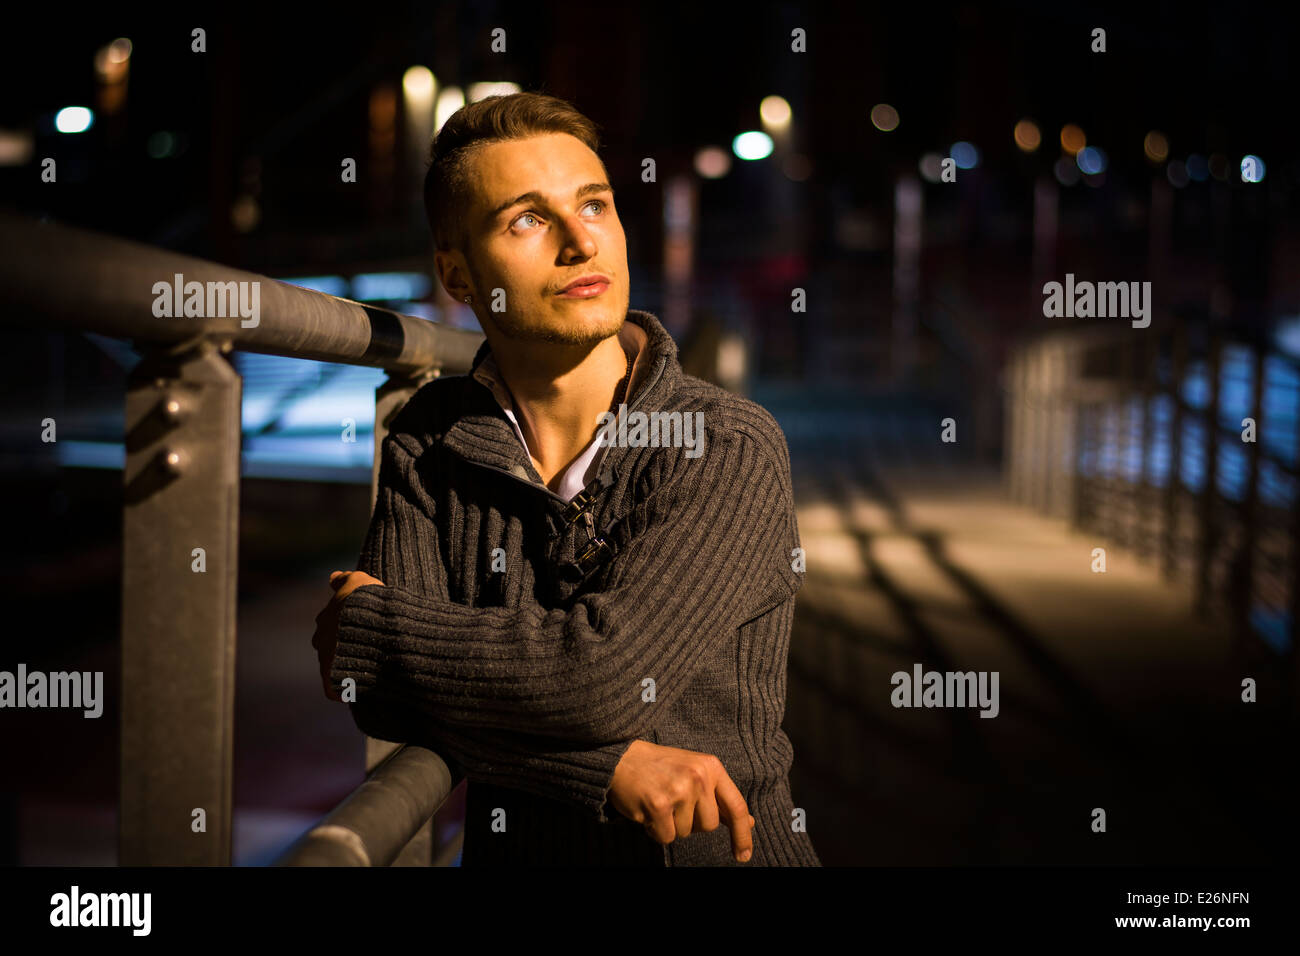 Hübscher blonder junger Mann allein im städtischen Umfeld, Handlauf, Nachtaufnahme gelehnt Stockfoto